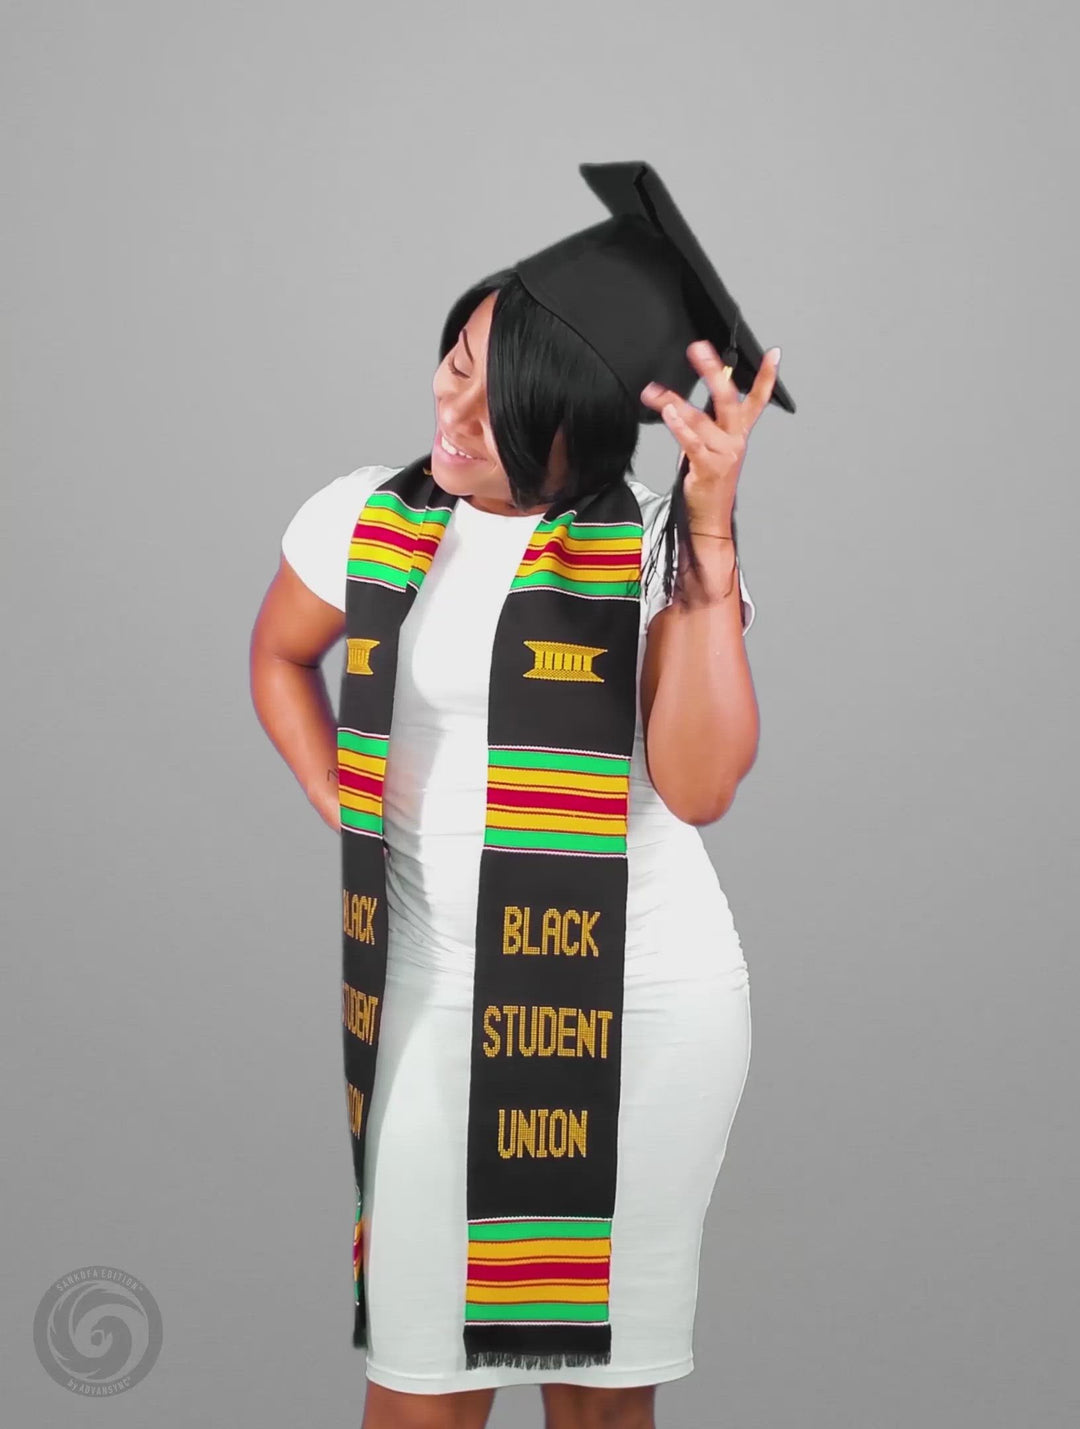 Black Student Union (BSU) Authentic Handwoven Kente Cloth Graduation Stole